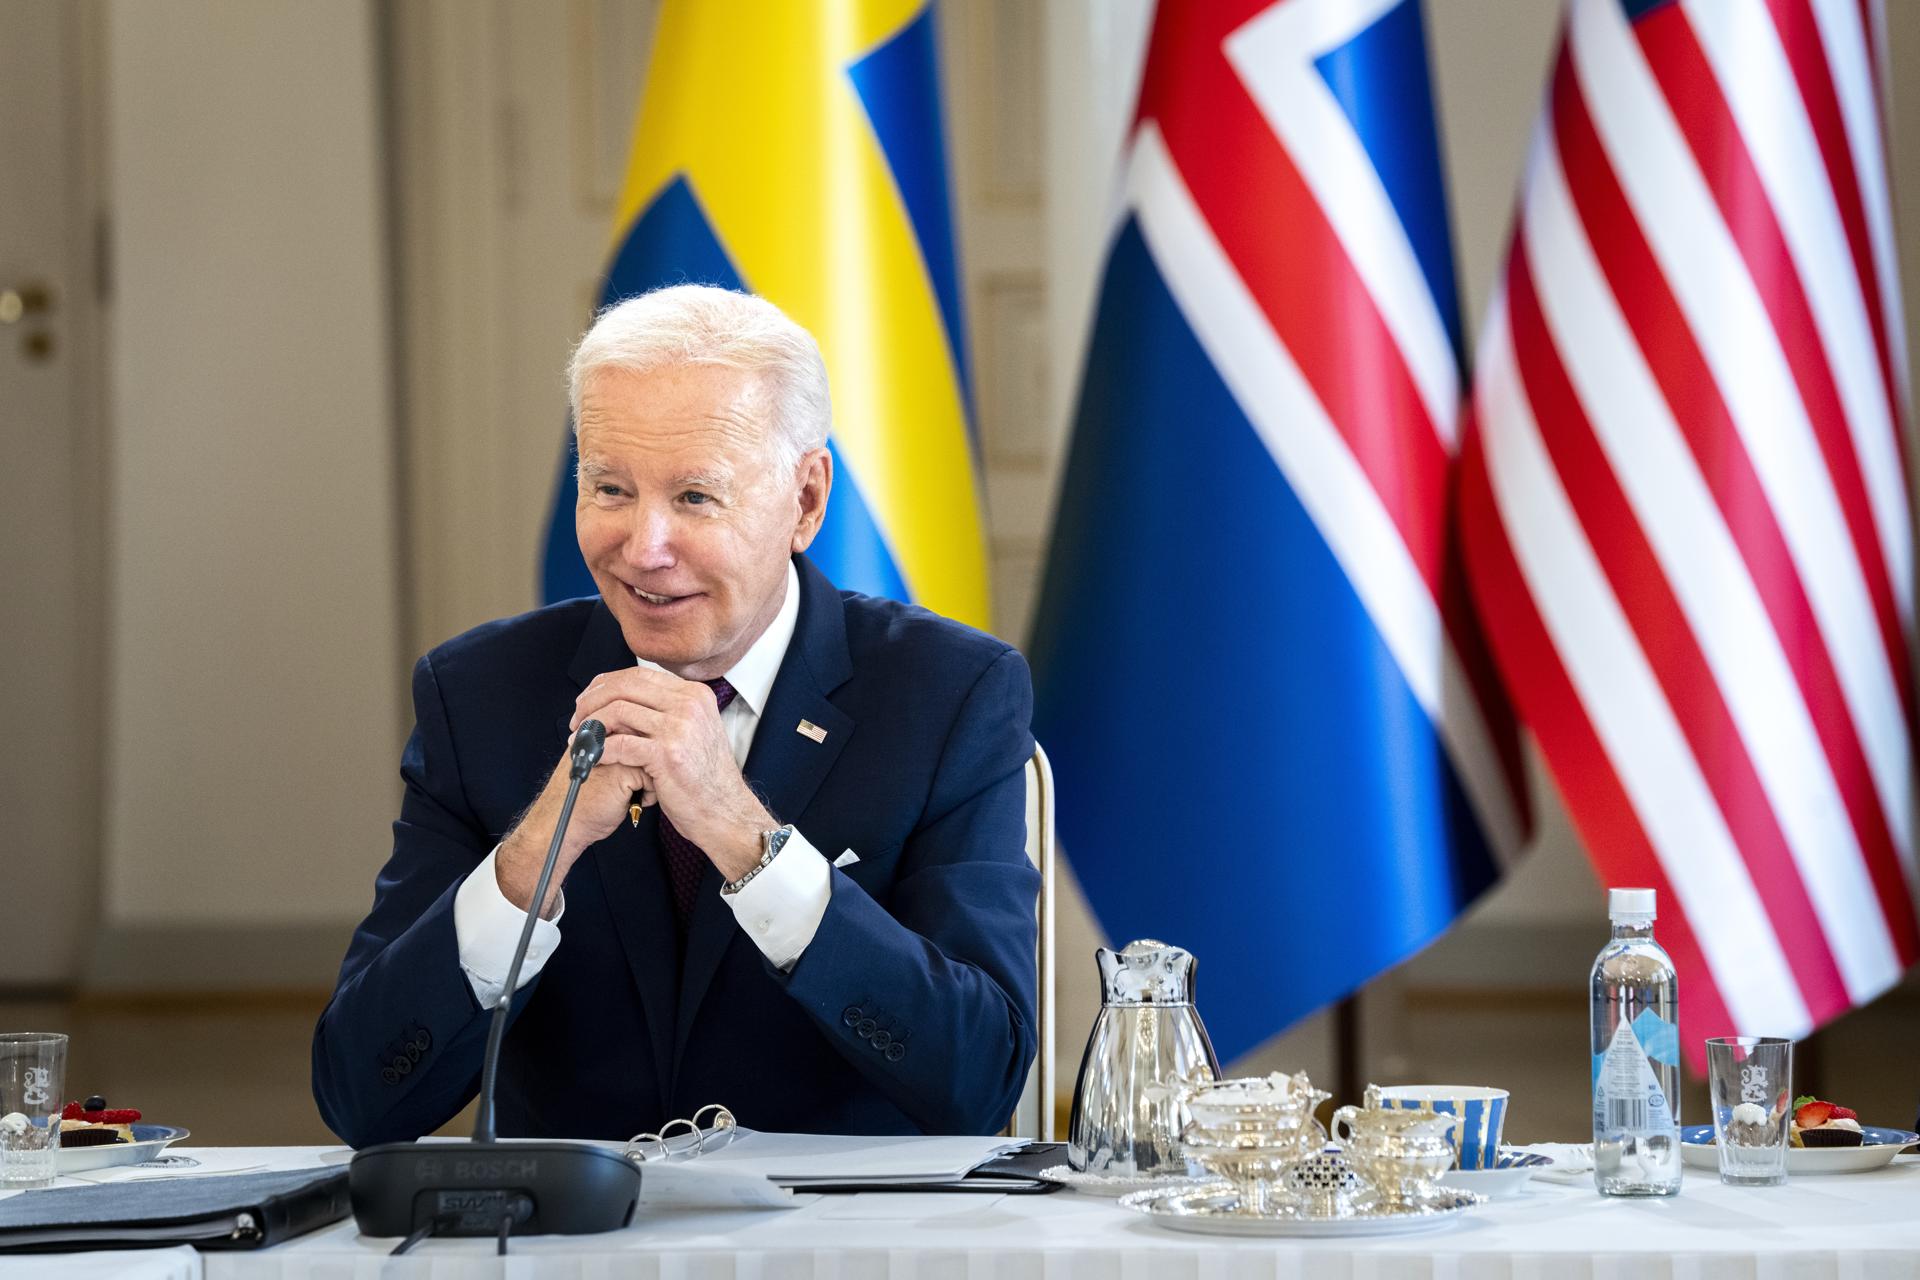 O presidente dos EUA, Joe Biden, durante reunião de cúpula dos Líderes Nórdicos-EUA no Palácio presidencial em Helsinque, Finlândia, nesta quinta-feira. EFE/EPA/IDA MARIE ODGAARD DENMARK OUT